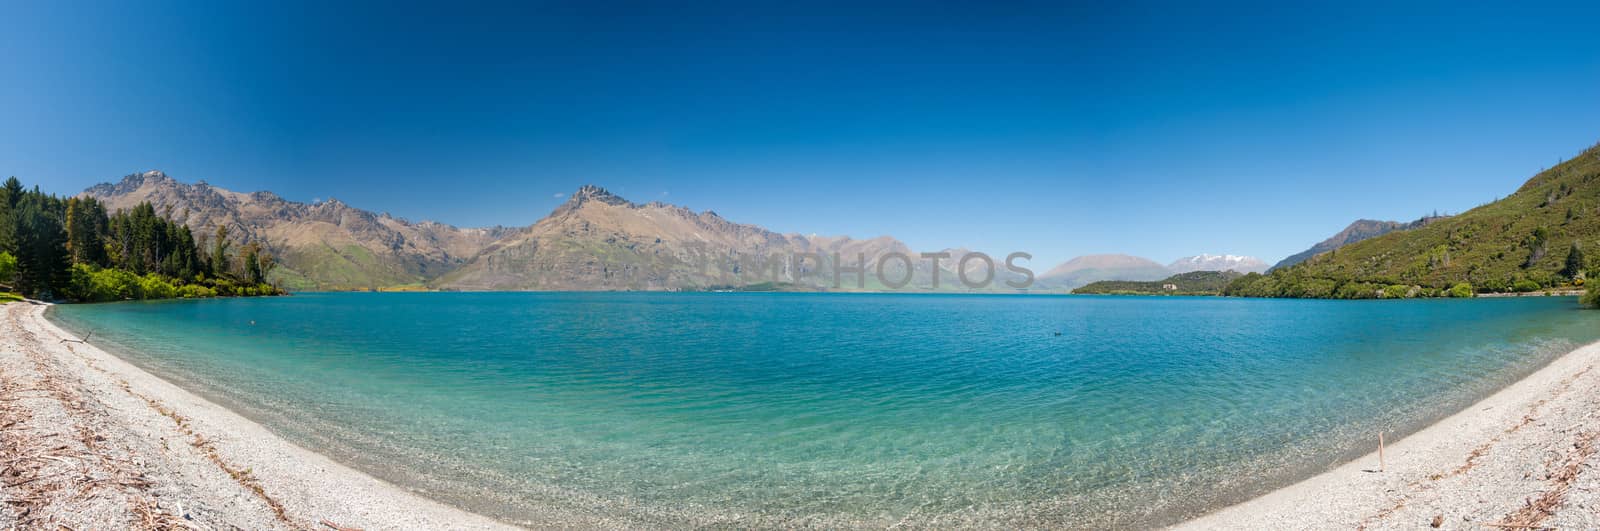 Lake Wakatipu by fyletto